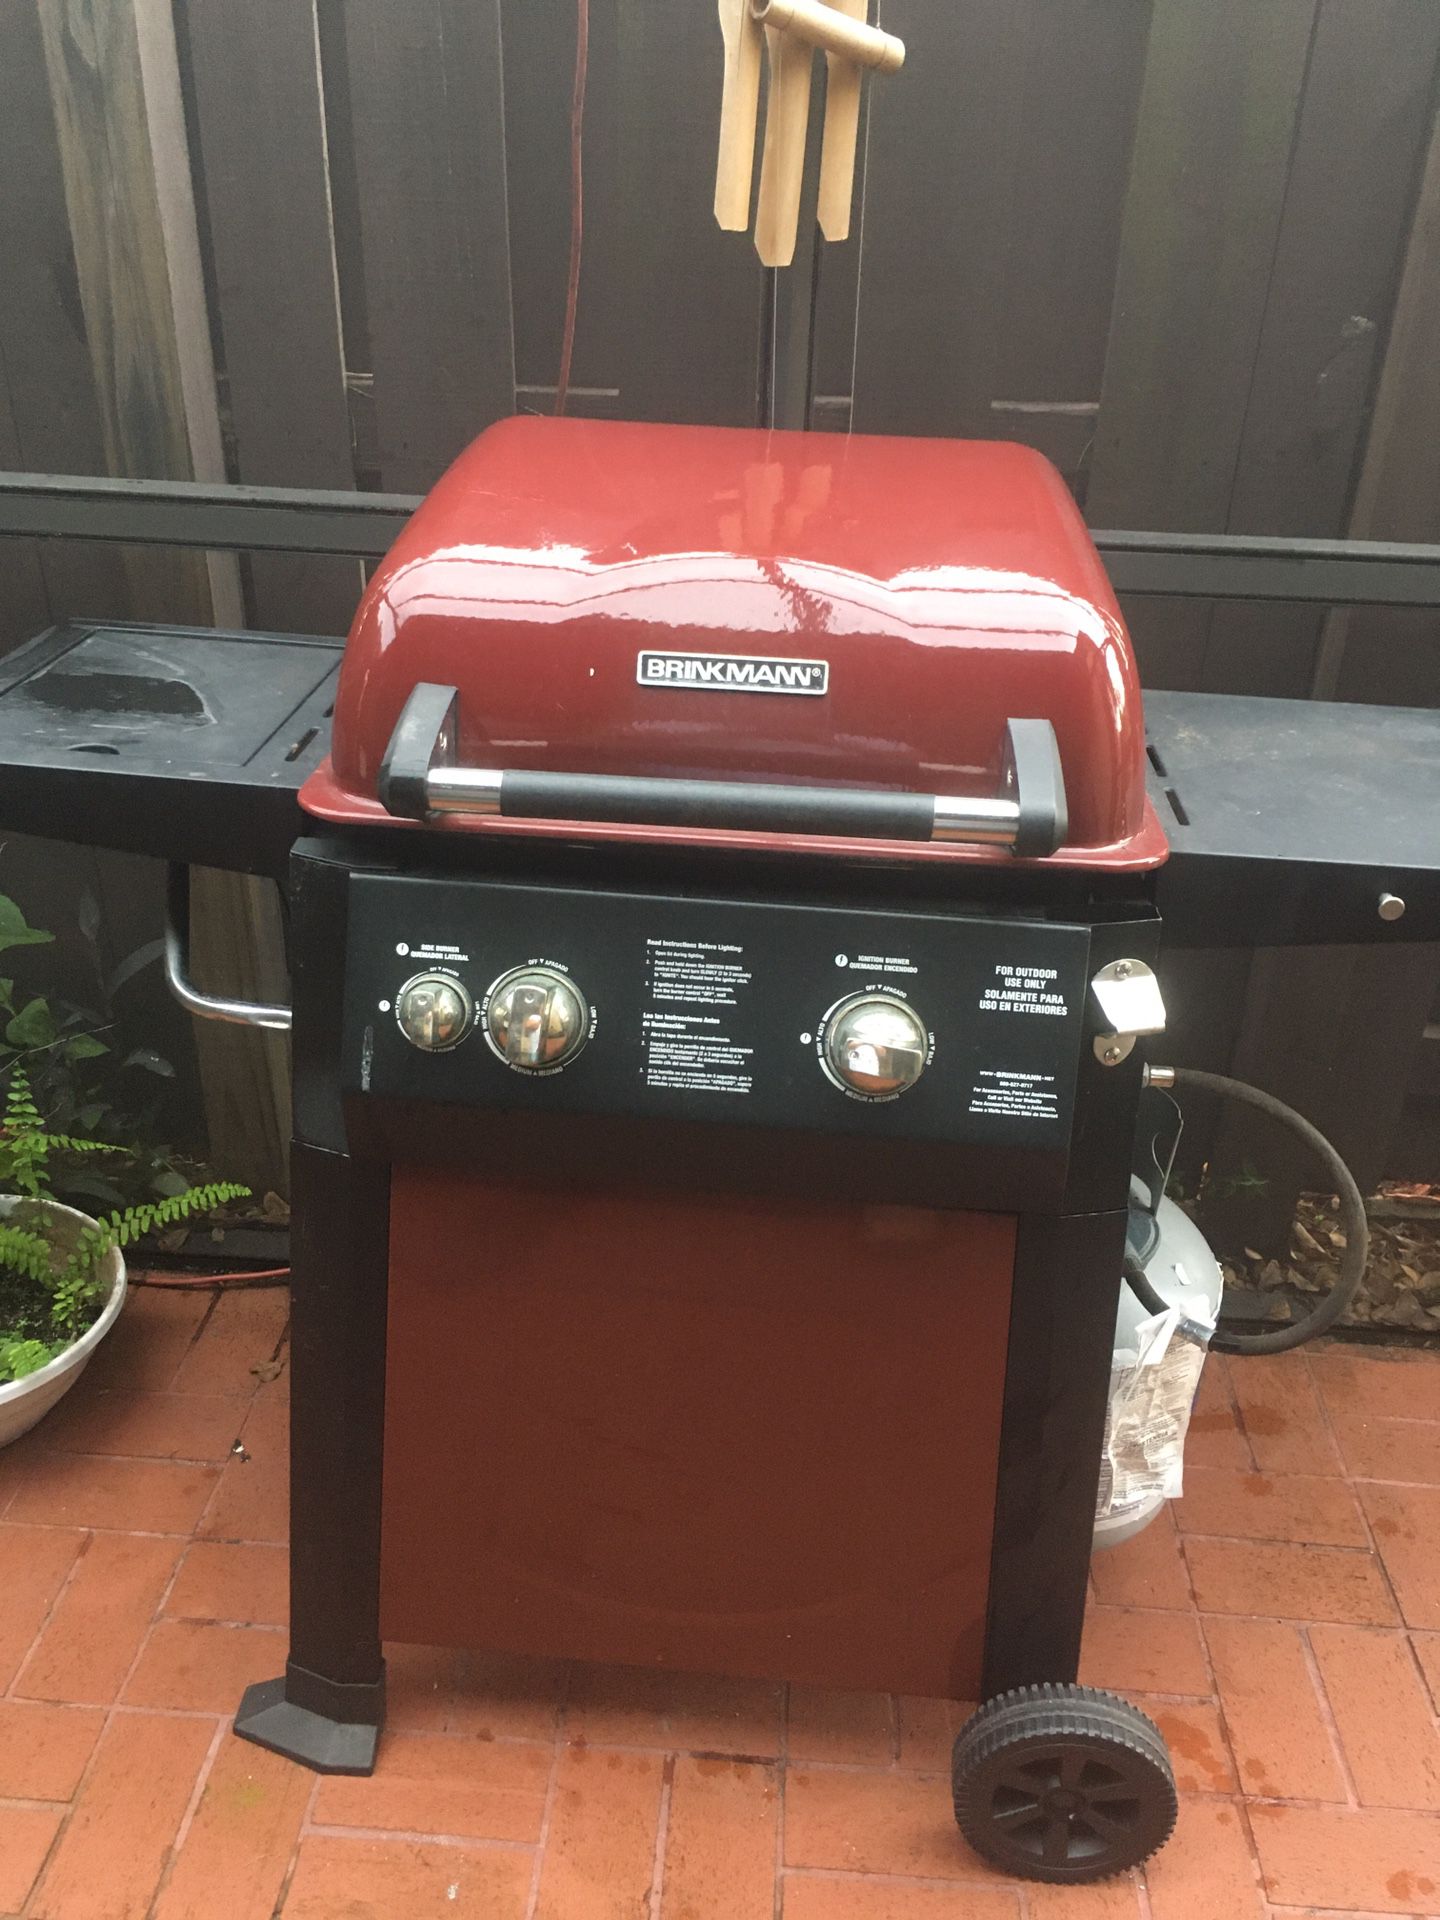 BBQ grill